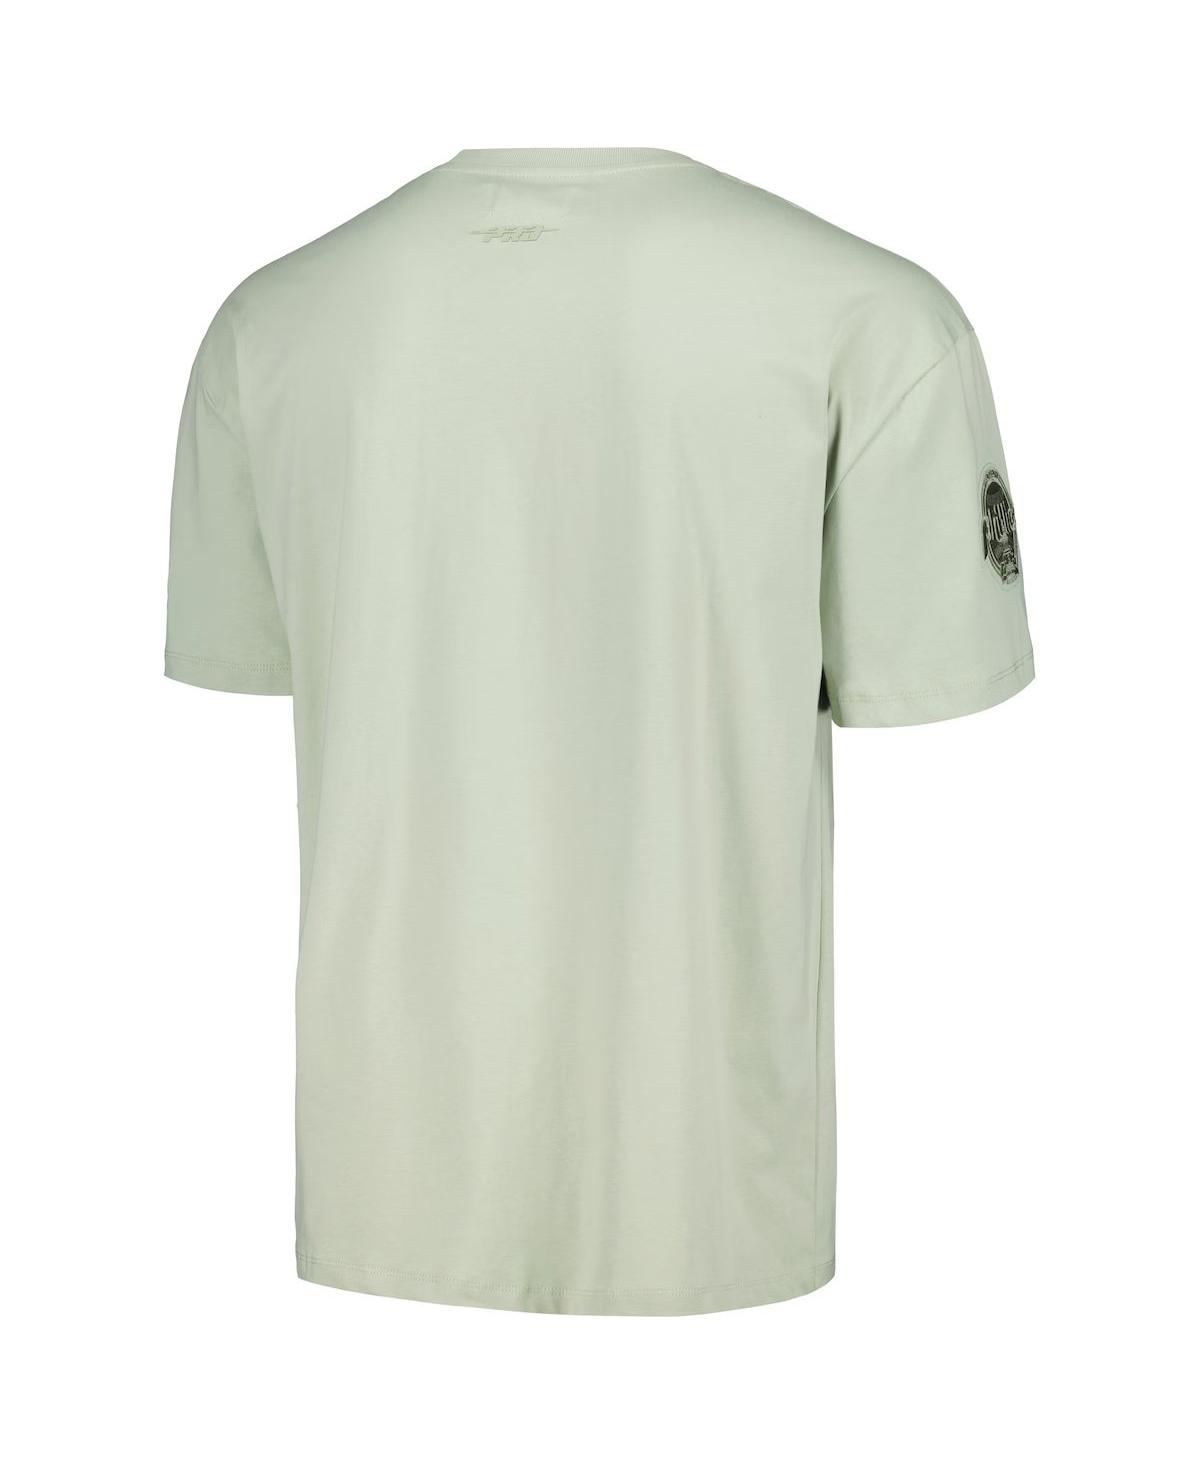 Shop Pro Standard Men's Mint Philadelphia Phillies Neutral Cj Dropped Shoulders T-shirt